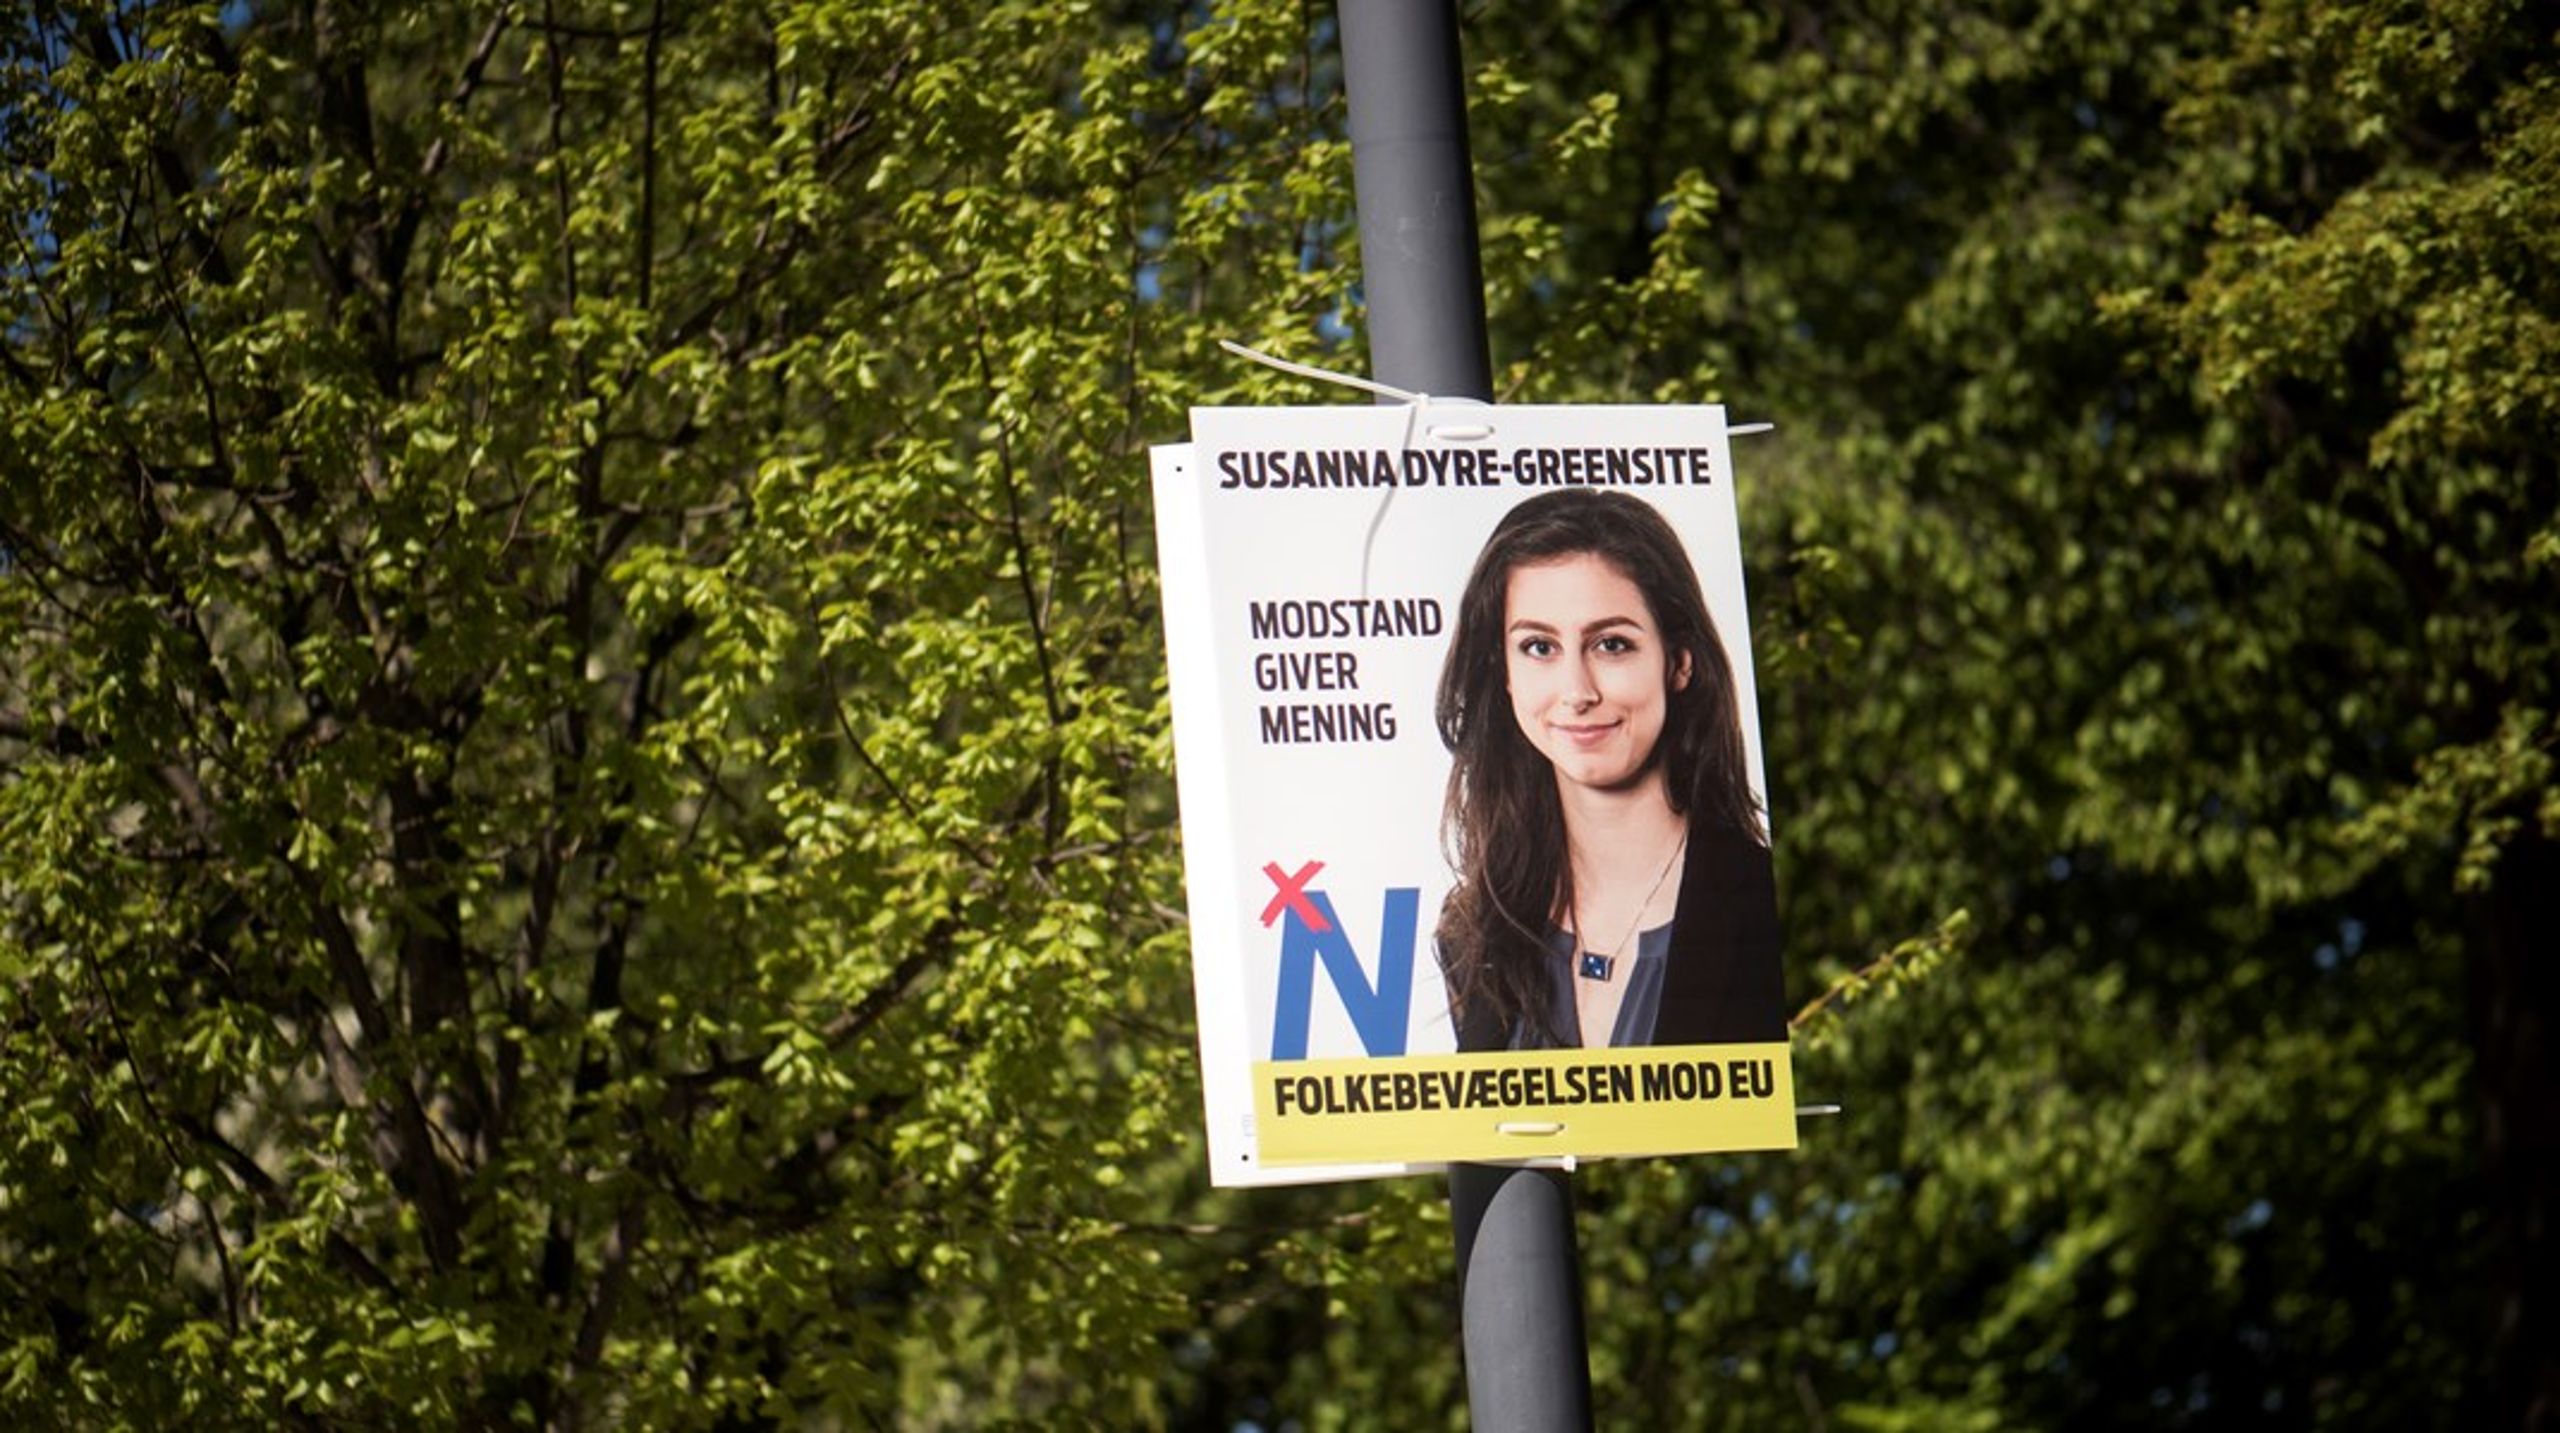 27-årige Susanna Dyre-Greensite blev valgt til formand for Folkebevægelsen mod EU i 2019. Dengang formåede bevægelsen ikke at opnå genvalg til Europa-Parlamentet. I 2024 forsøger den igen at opnå valg. Inden da kæmper den for, at danskerne stemmer nej 1. juni.